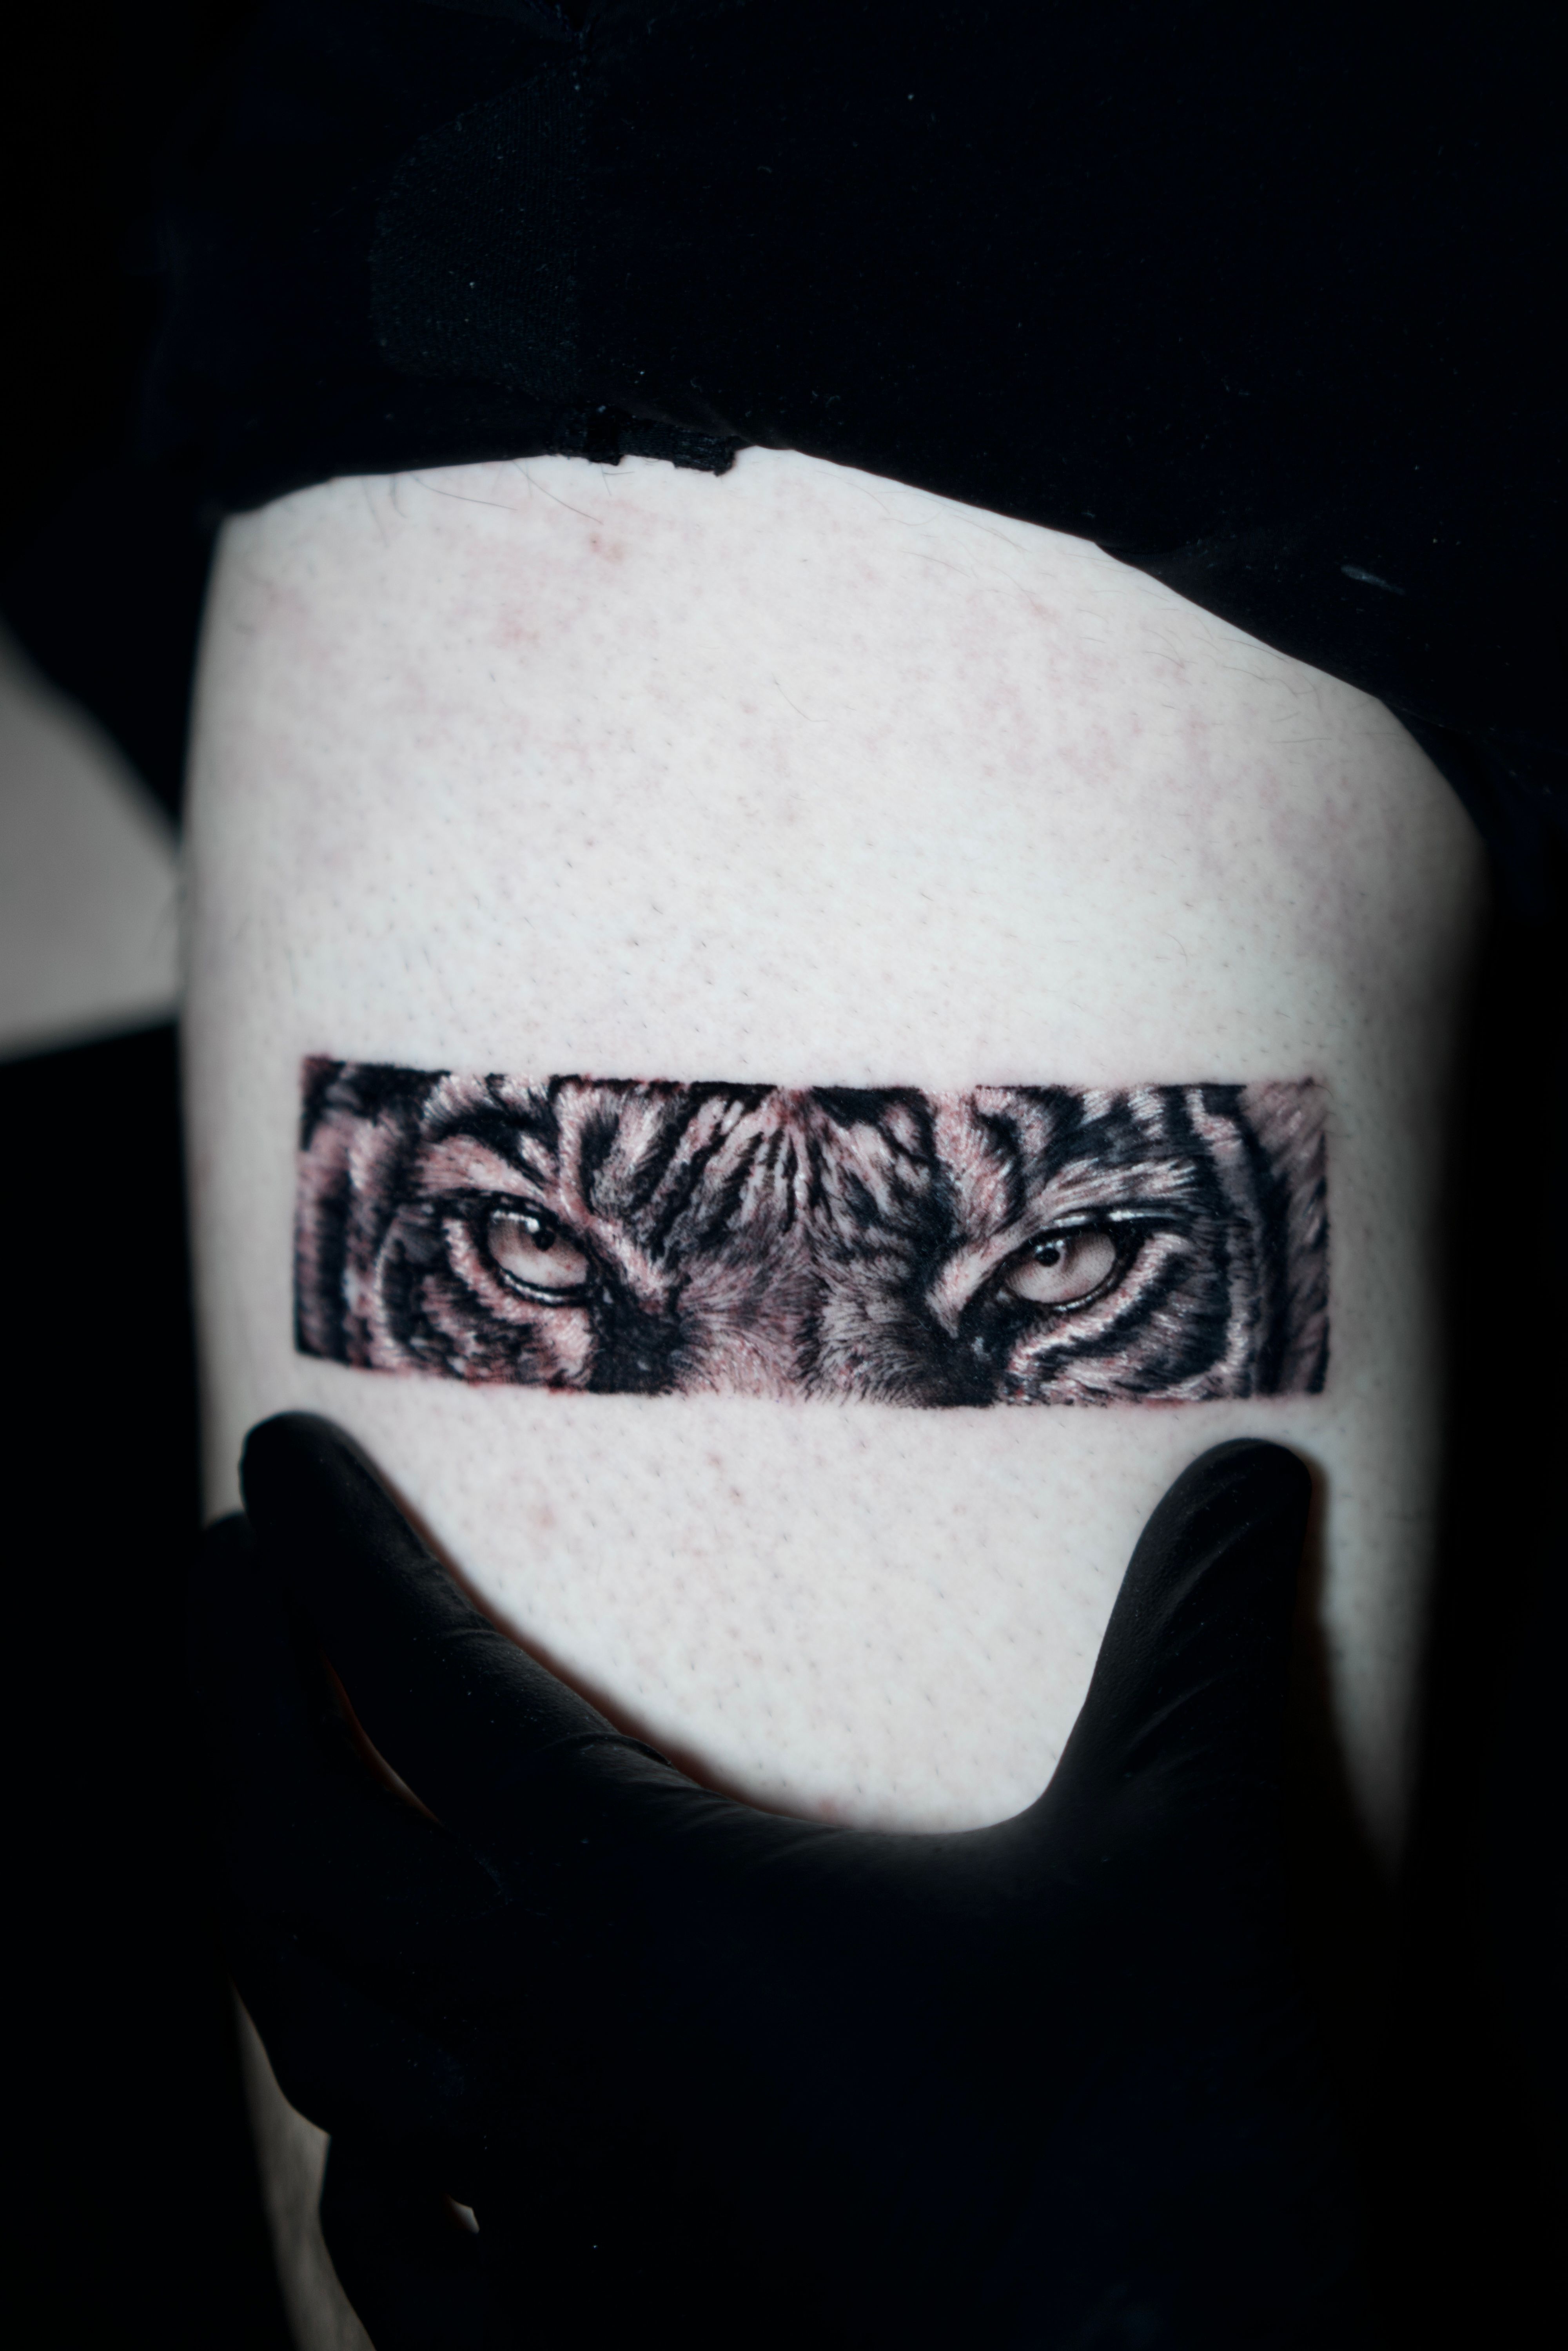 Pravin Tattoos - TIGER BAND TATTOO | Fineline Tattoo... | Facebook